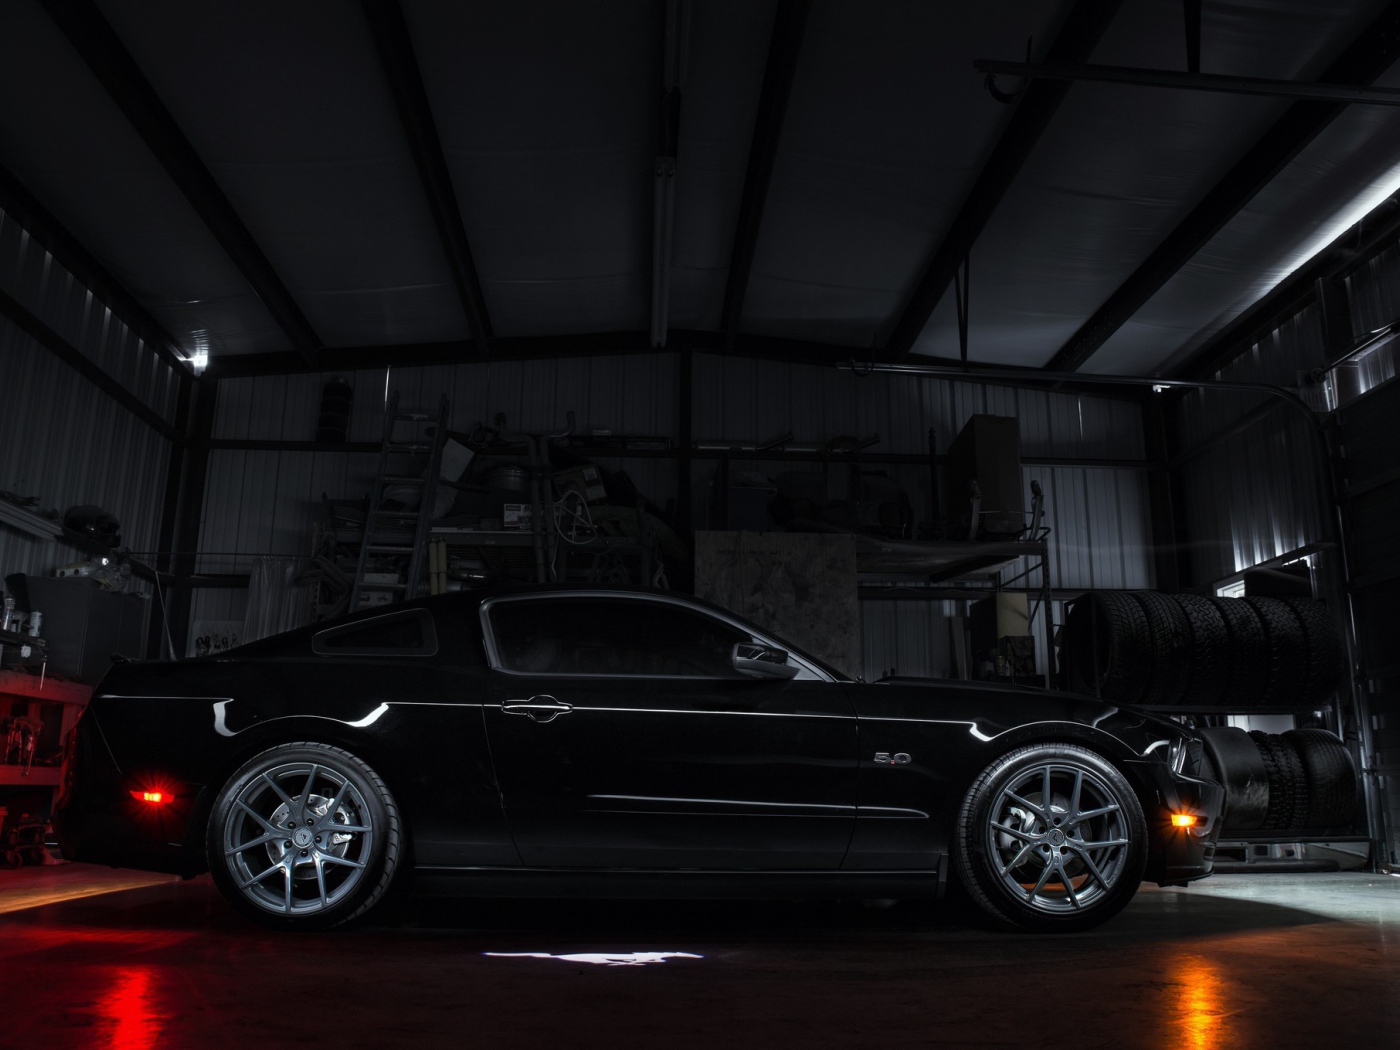 Черный спортивный Ford Mustang в гараже